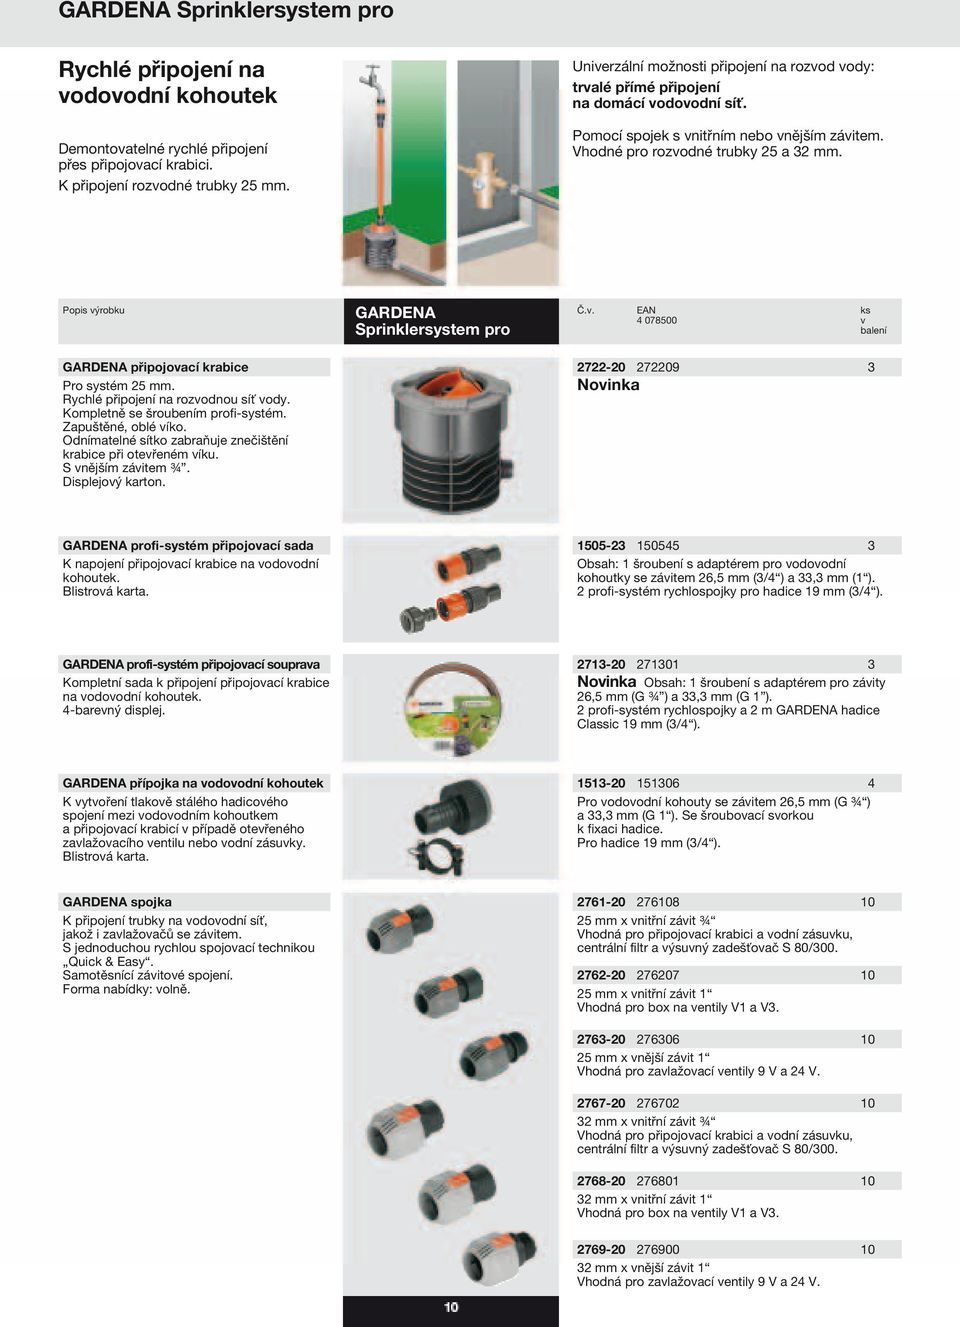 GARDENA zavlažovací technika, čerpadla. Obsah - PDF Free Download